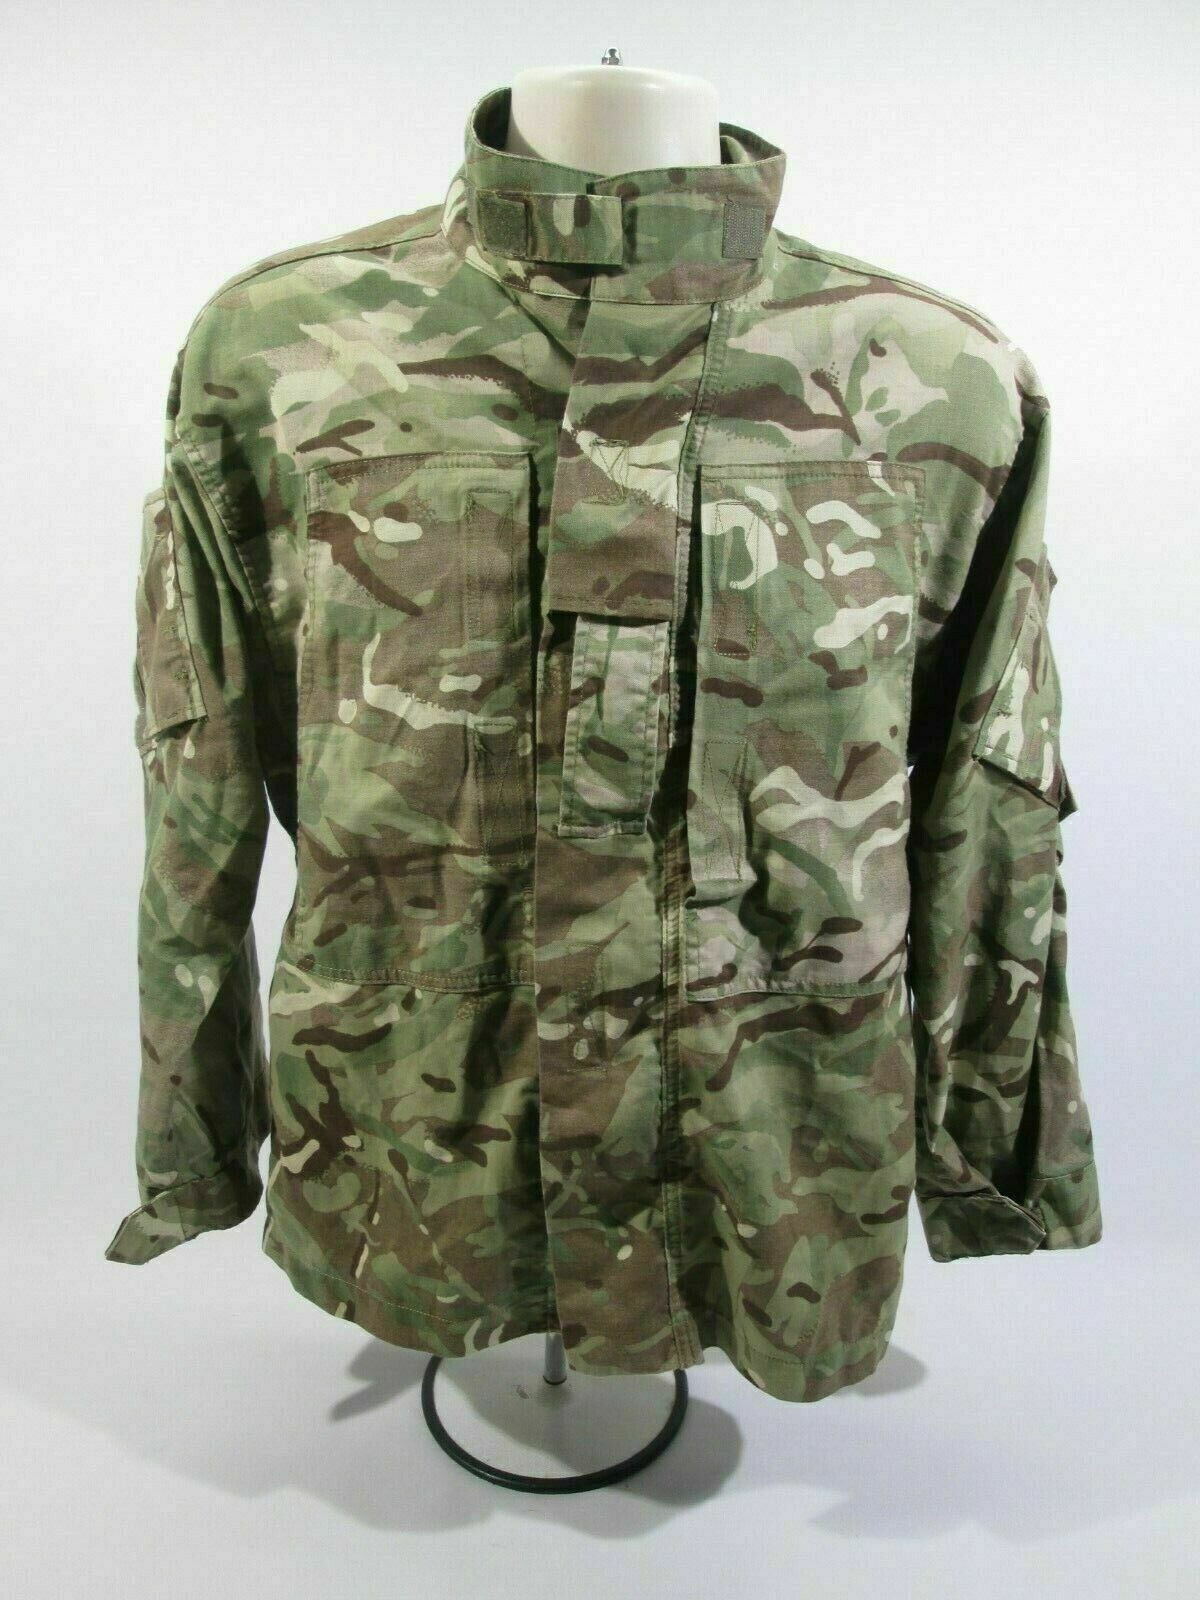 Genuine British Army MTP Shirt Jacket Combat PCS Multicam Surplus Uniform Cadet